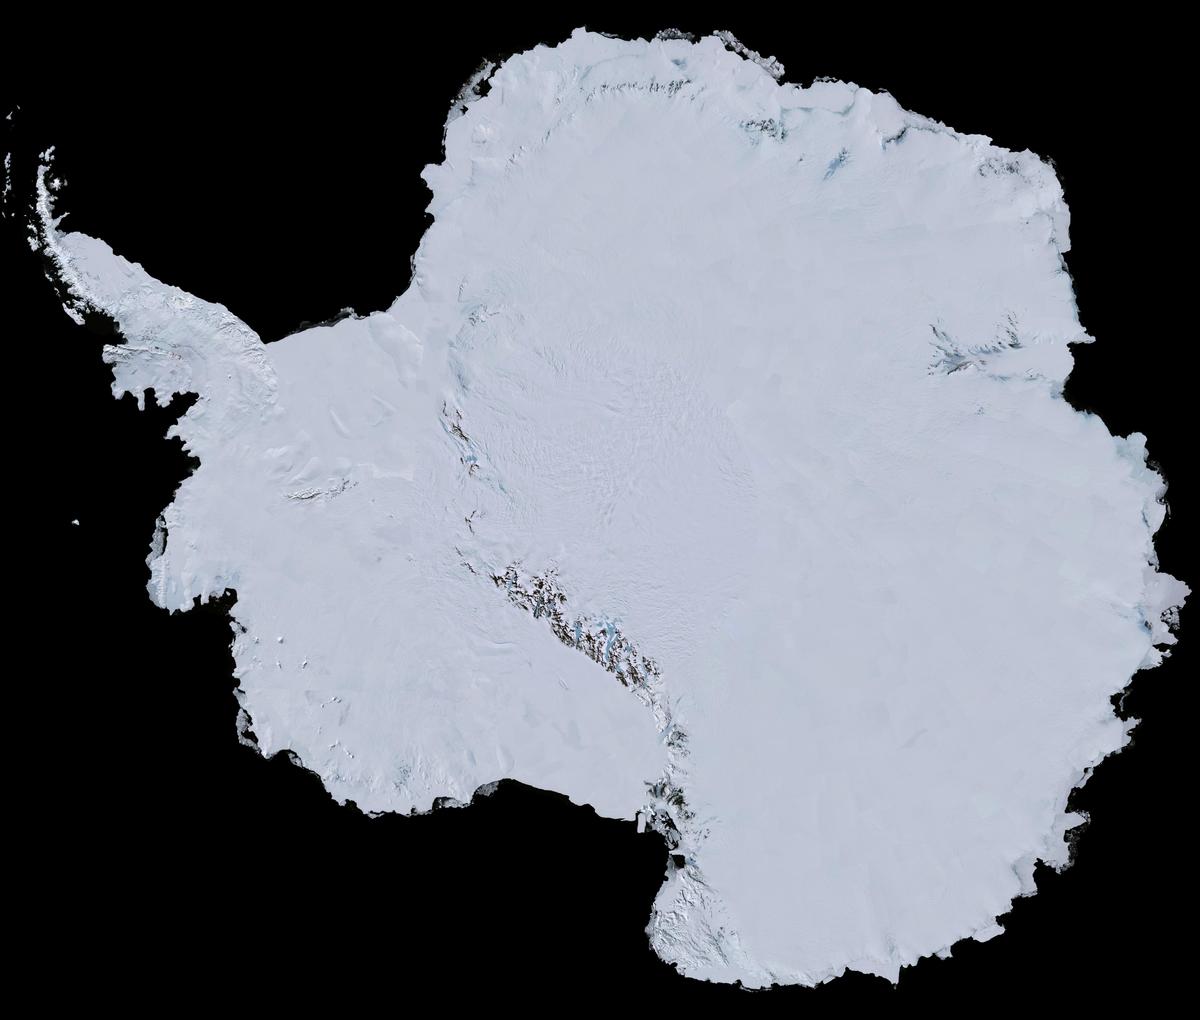 landsat-satellite-image-antarctica